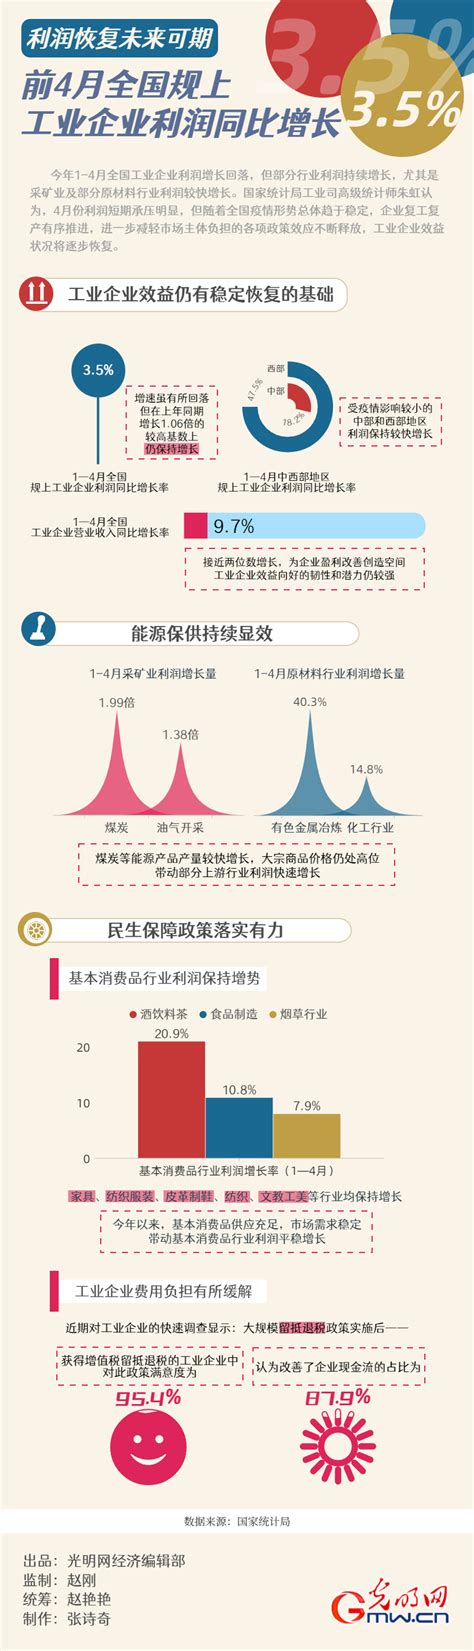 专精特新中小企业认定标准_上海市企业服务云